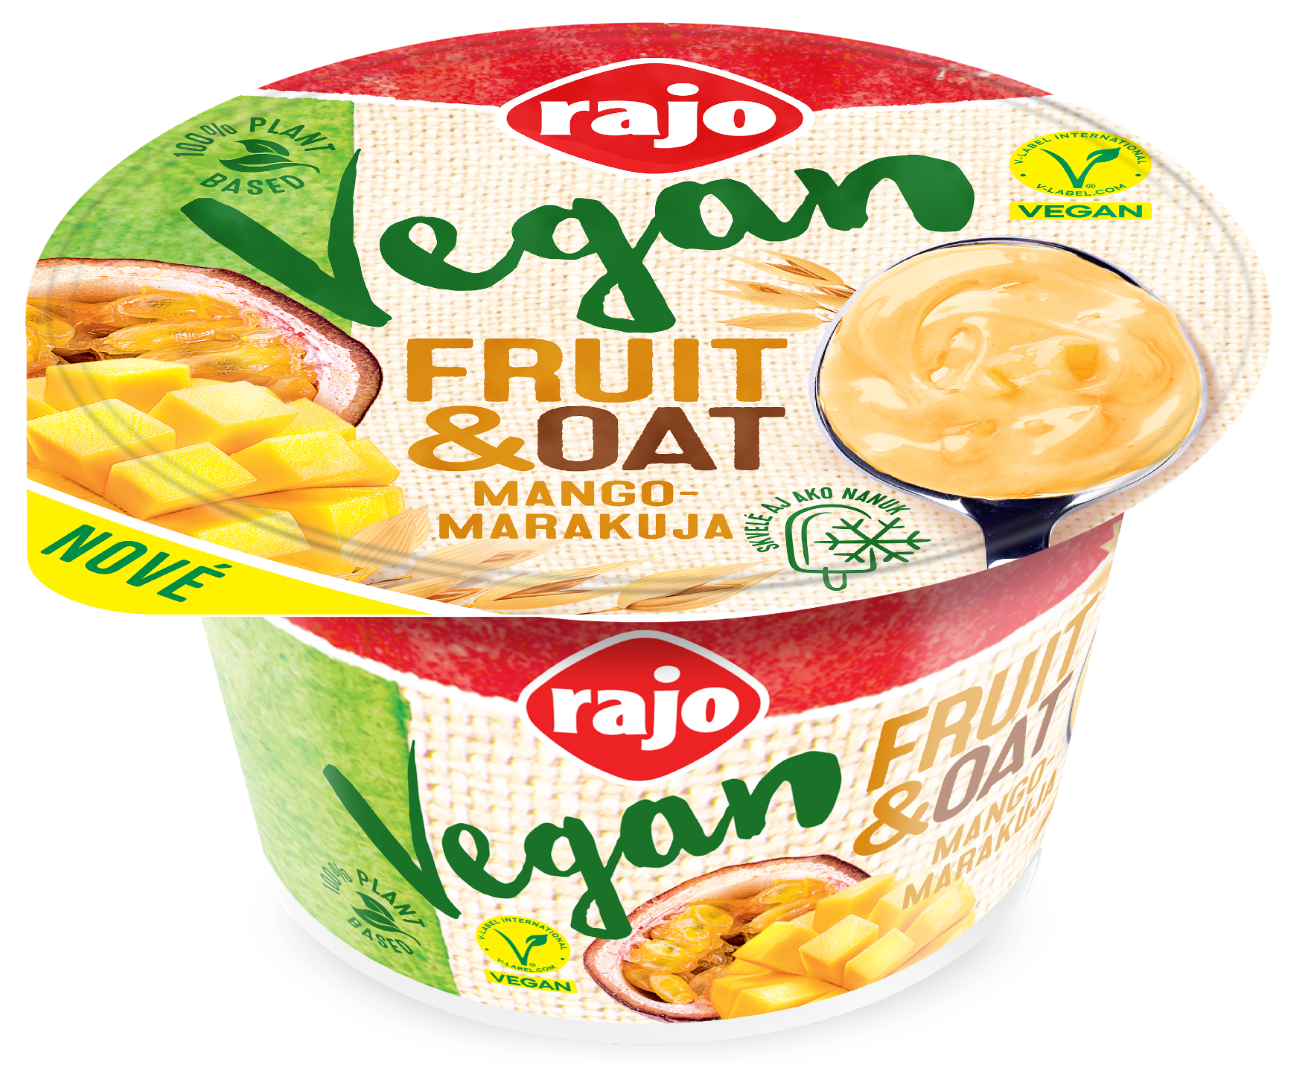 Vegan Fruit&Oat dezert mango-marakuja